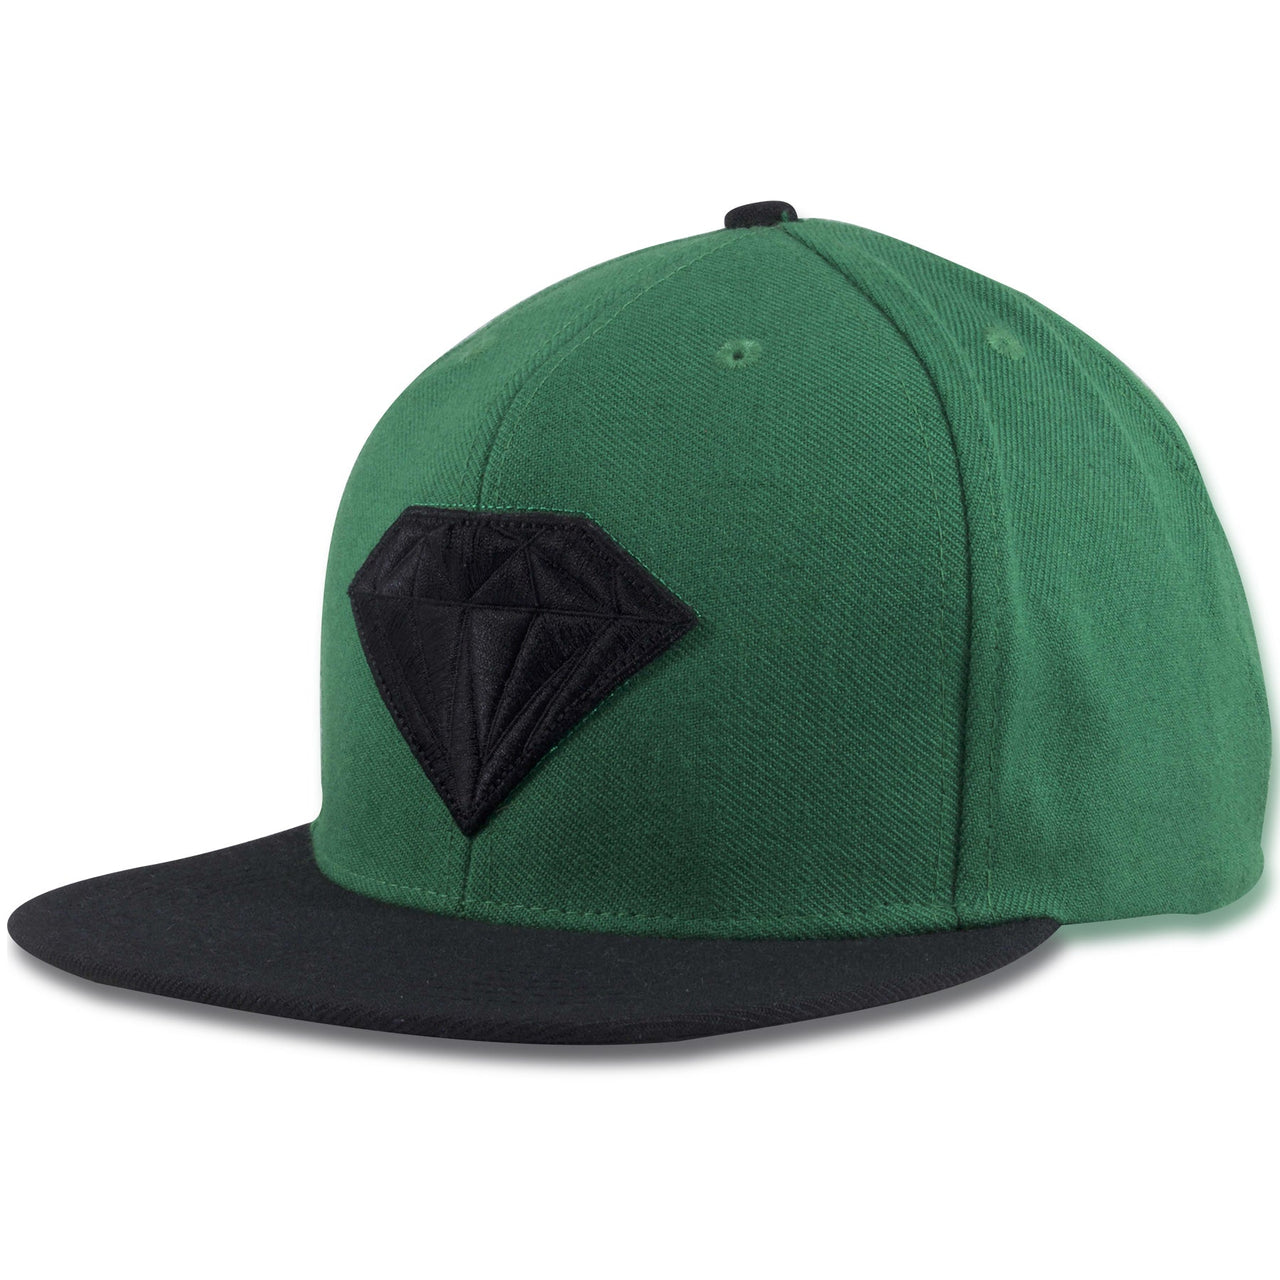 Diamond Emblem Green on Black Adjustable Snapback Hat